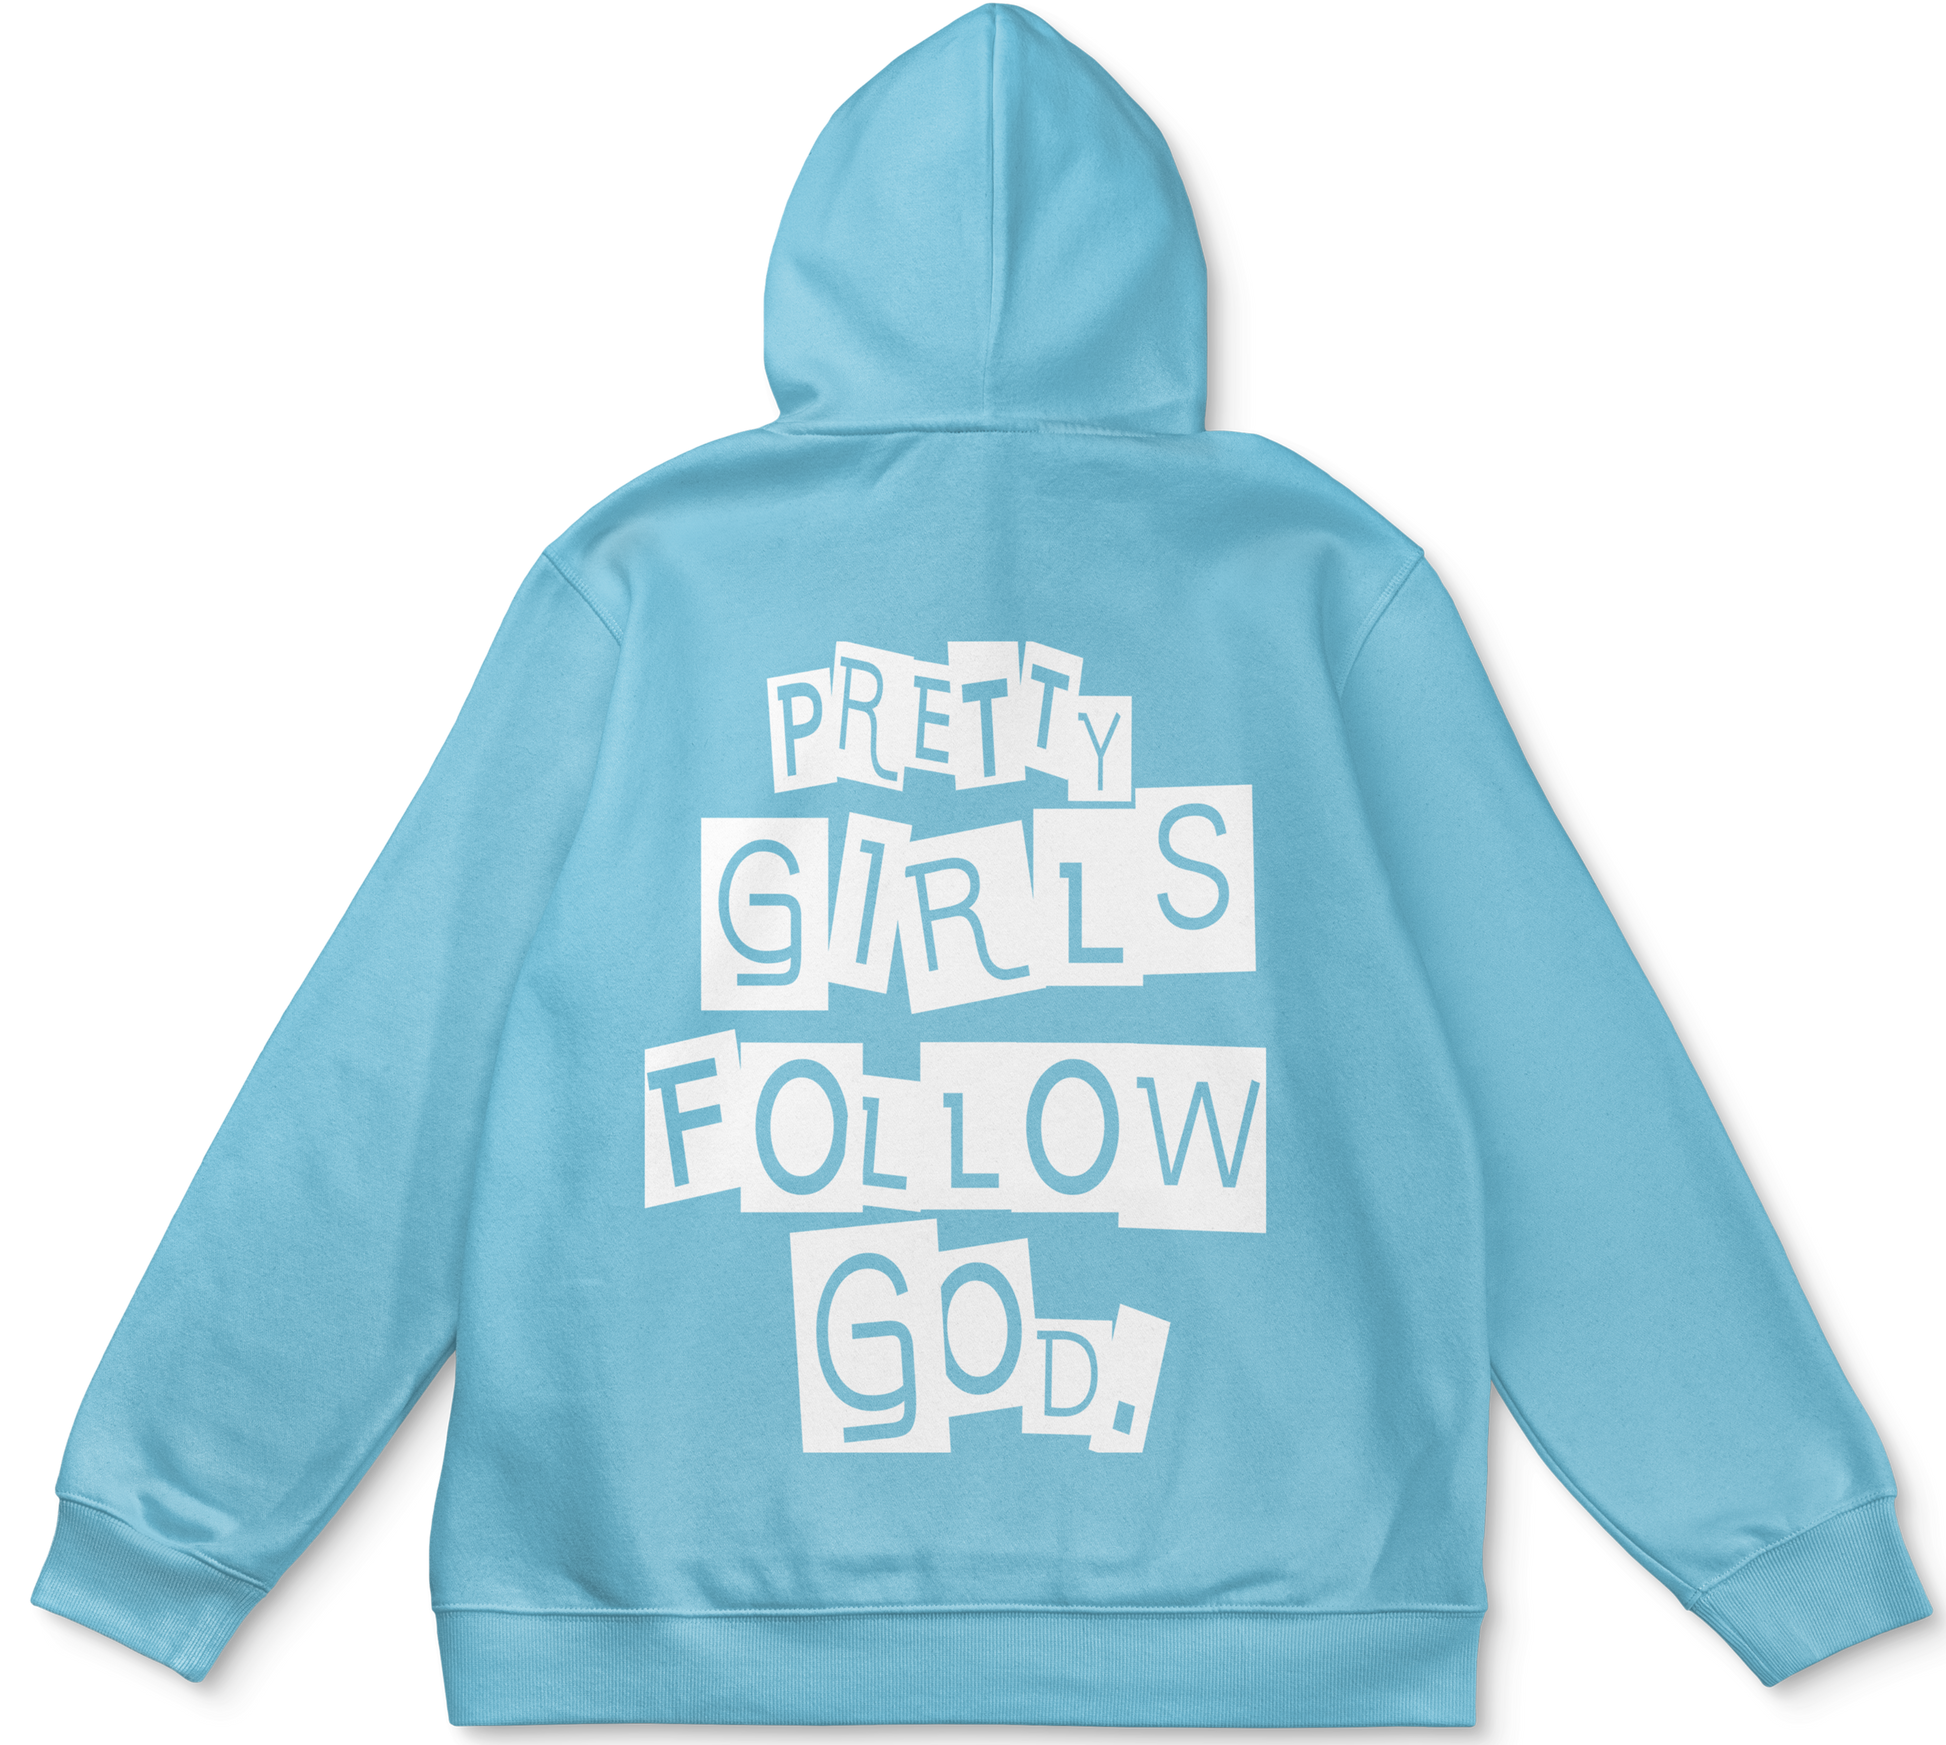 Pretty girls follow God